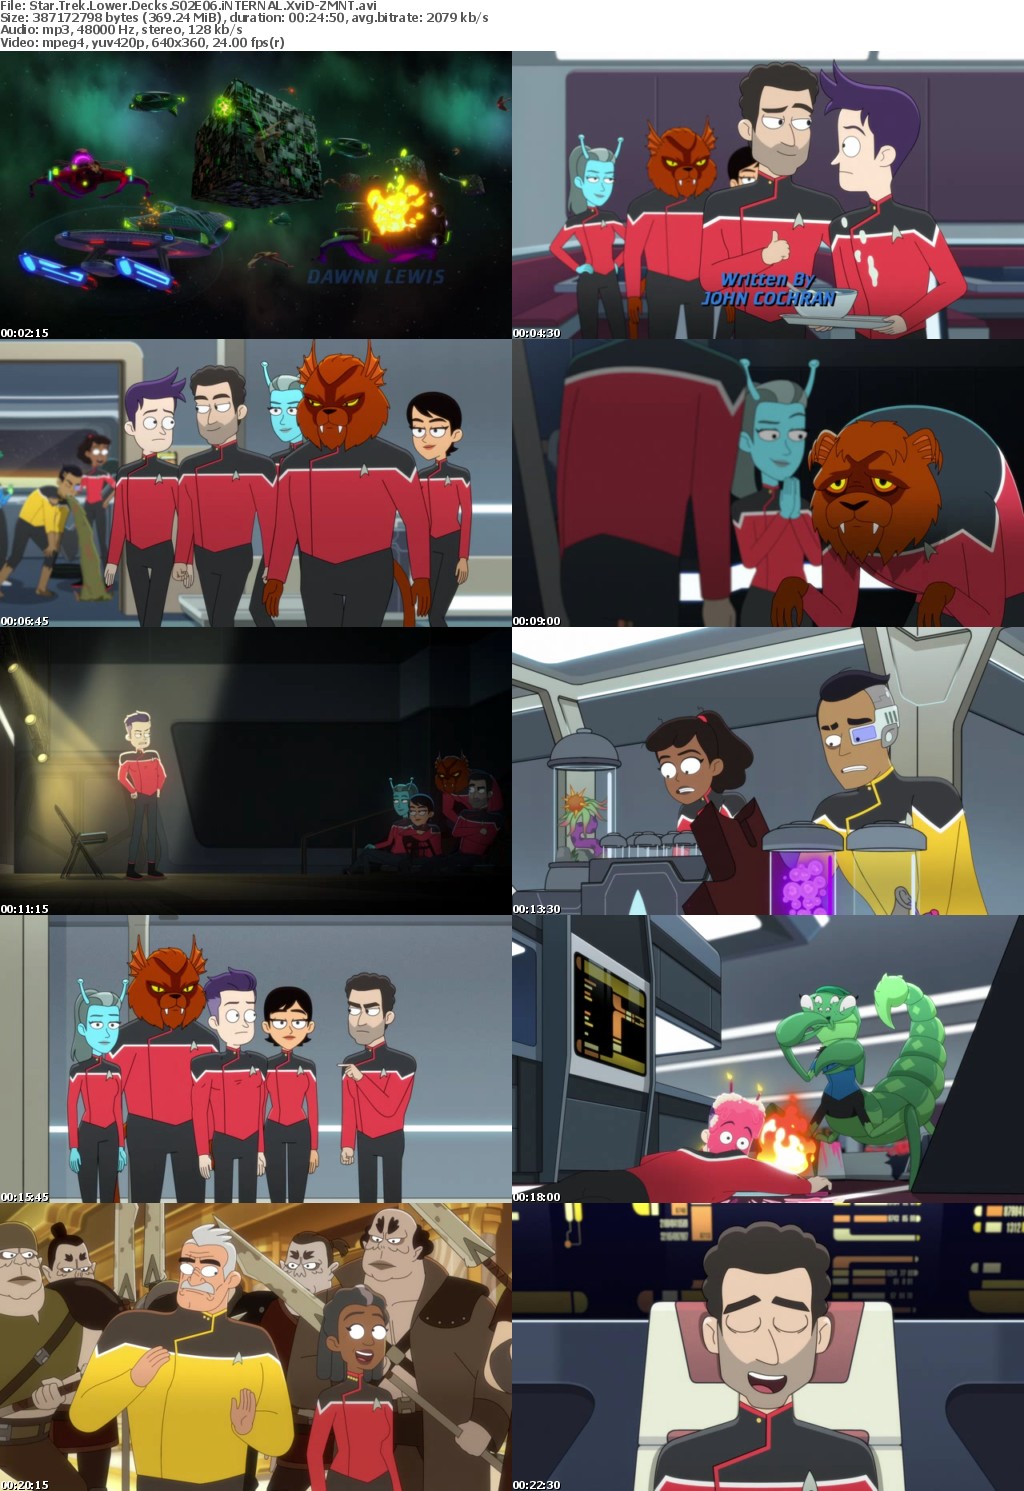 Star Trek Lower Decks S02 XviD-ZMNT